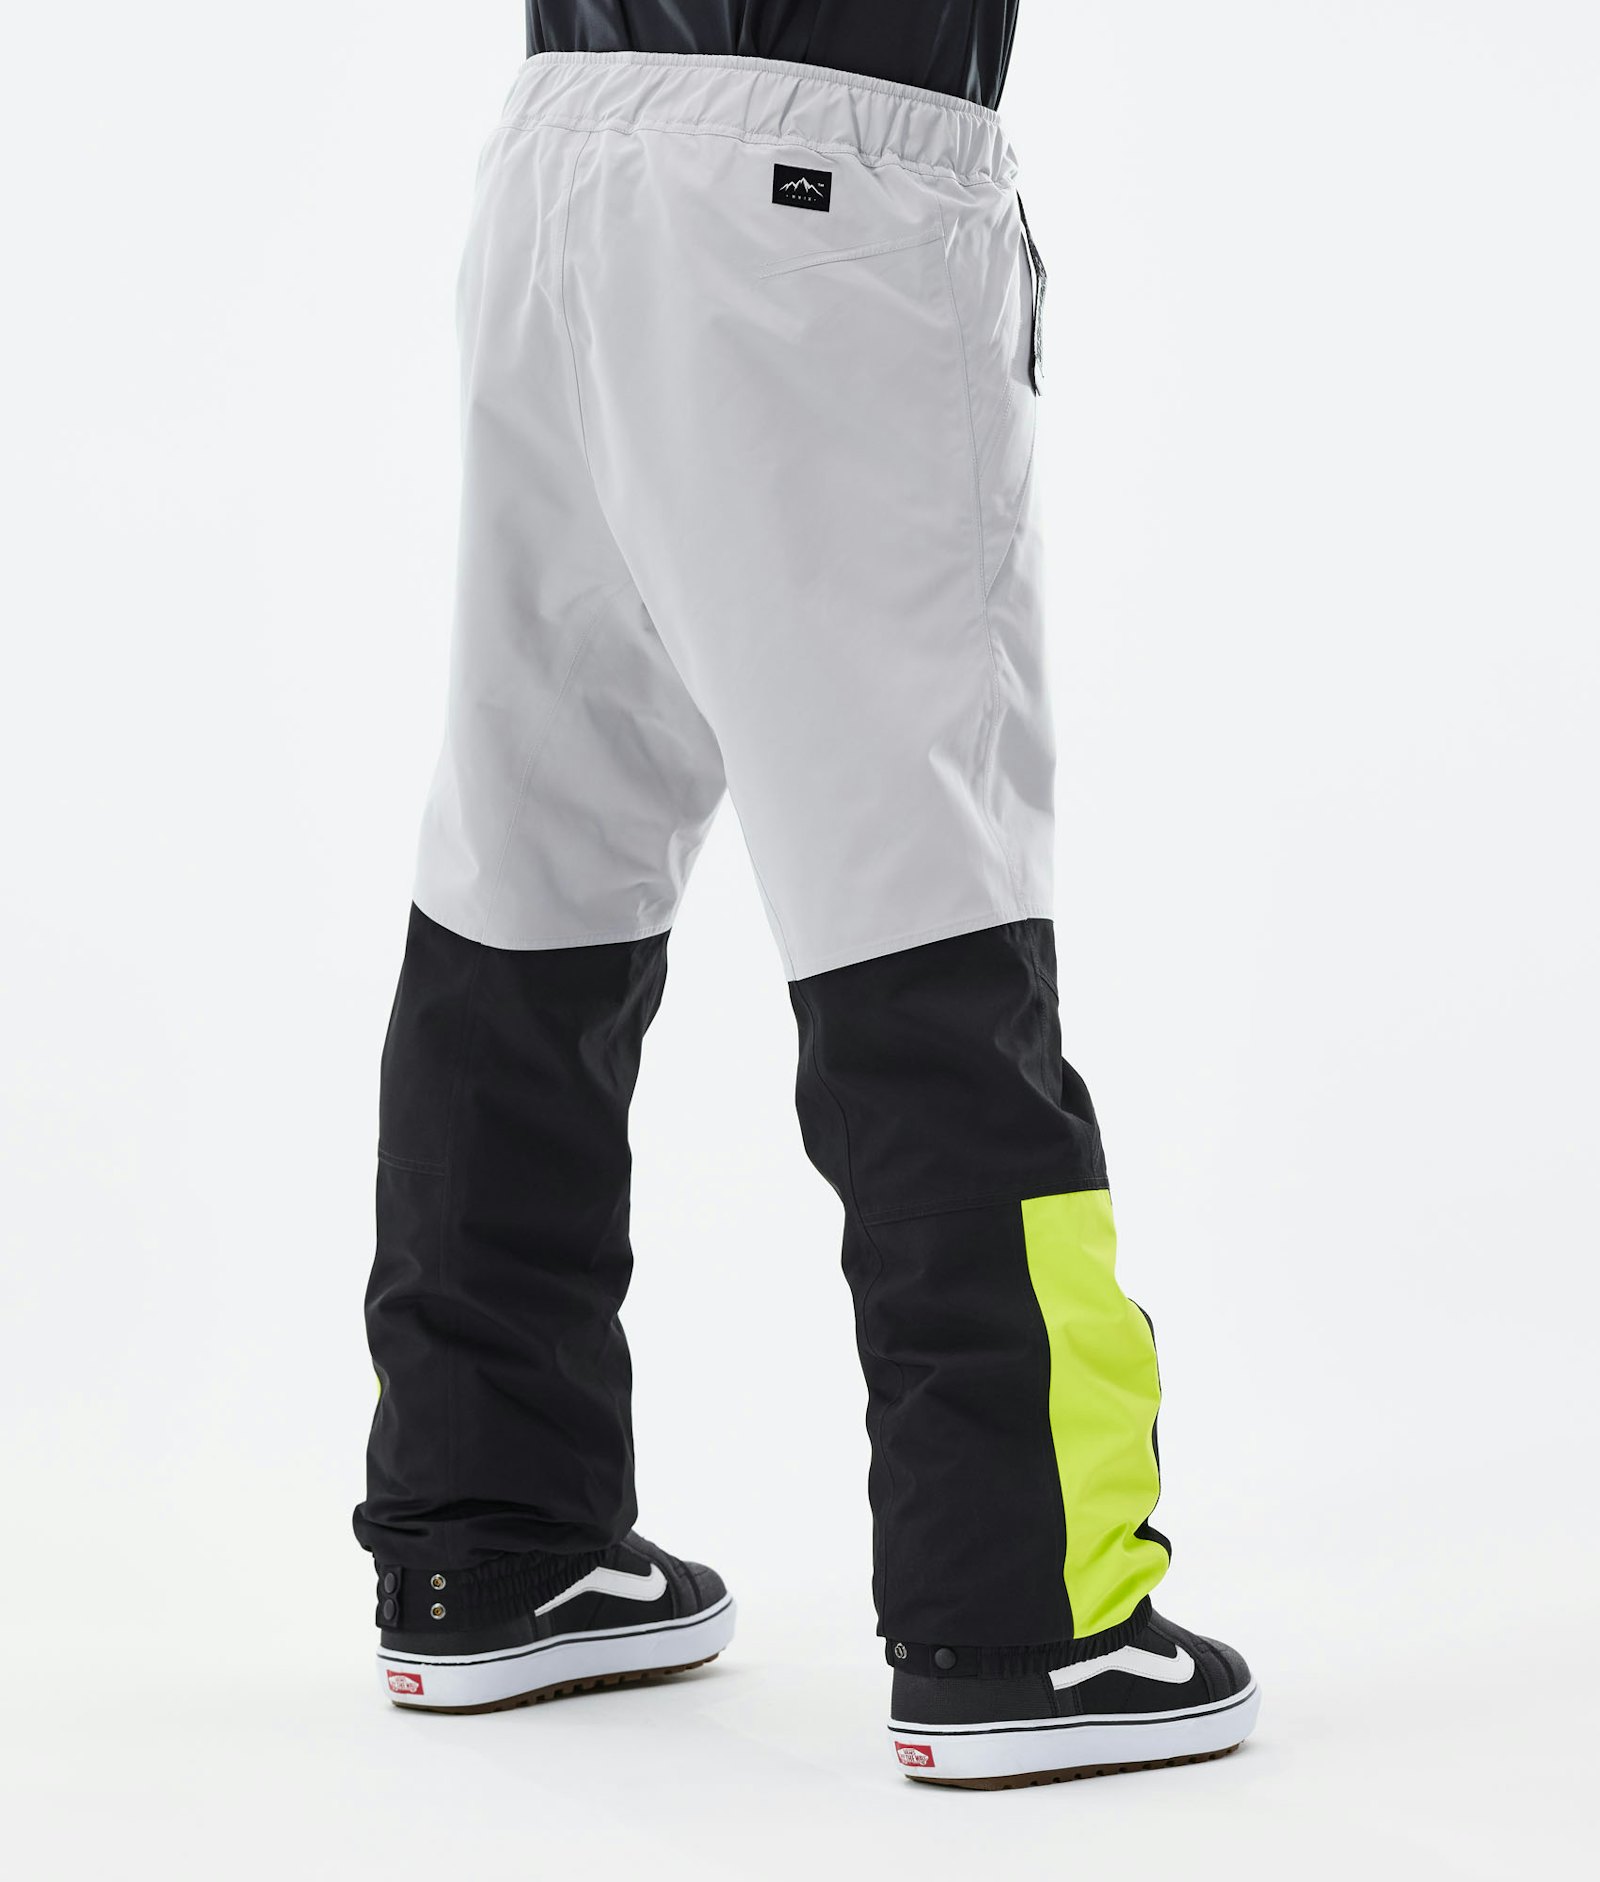 Blizzard LE Pantalon de Snowboard Homme Limited Edition Multicolor Light Grey